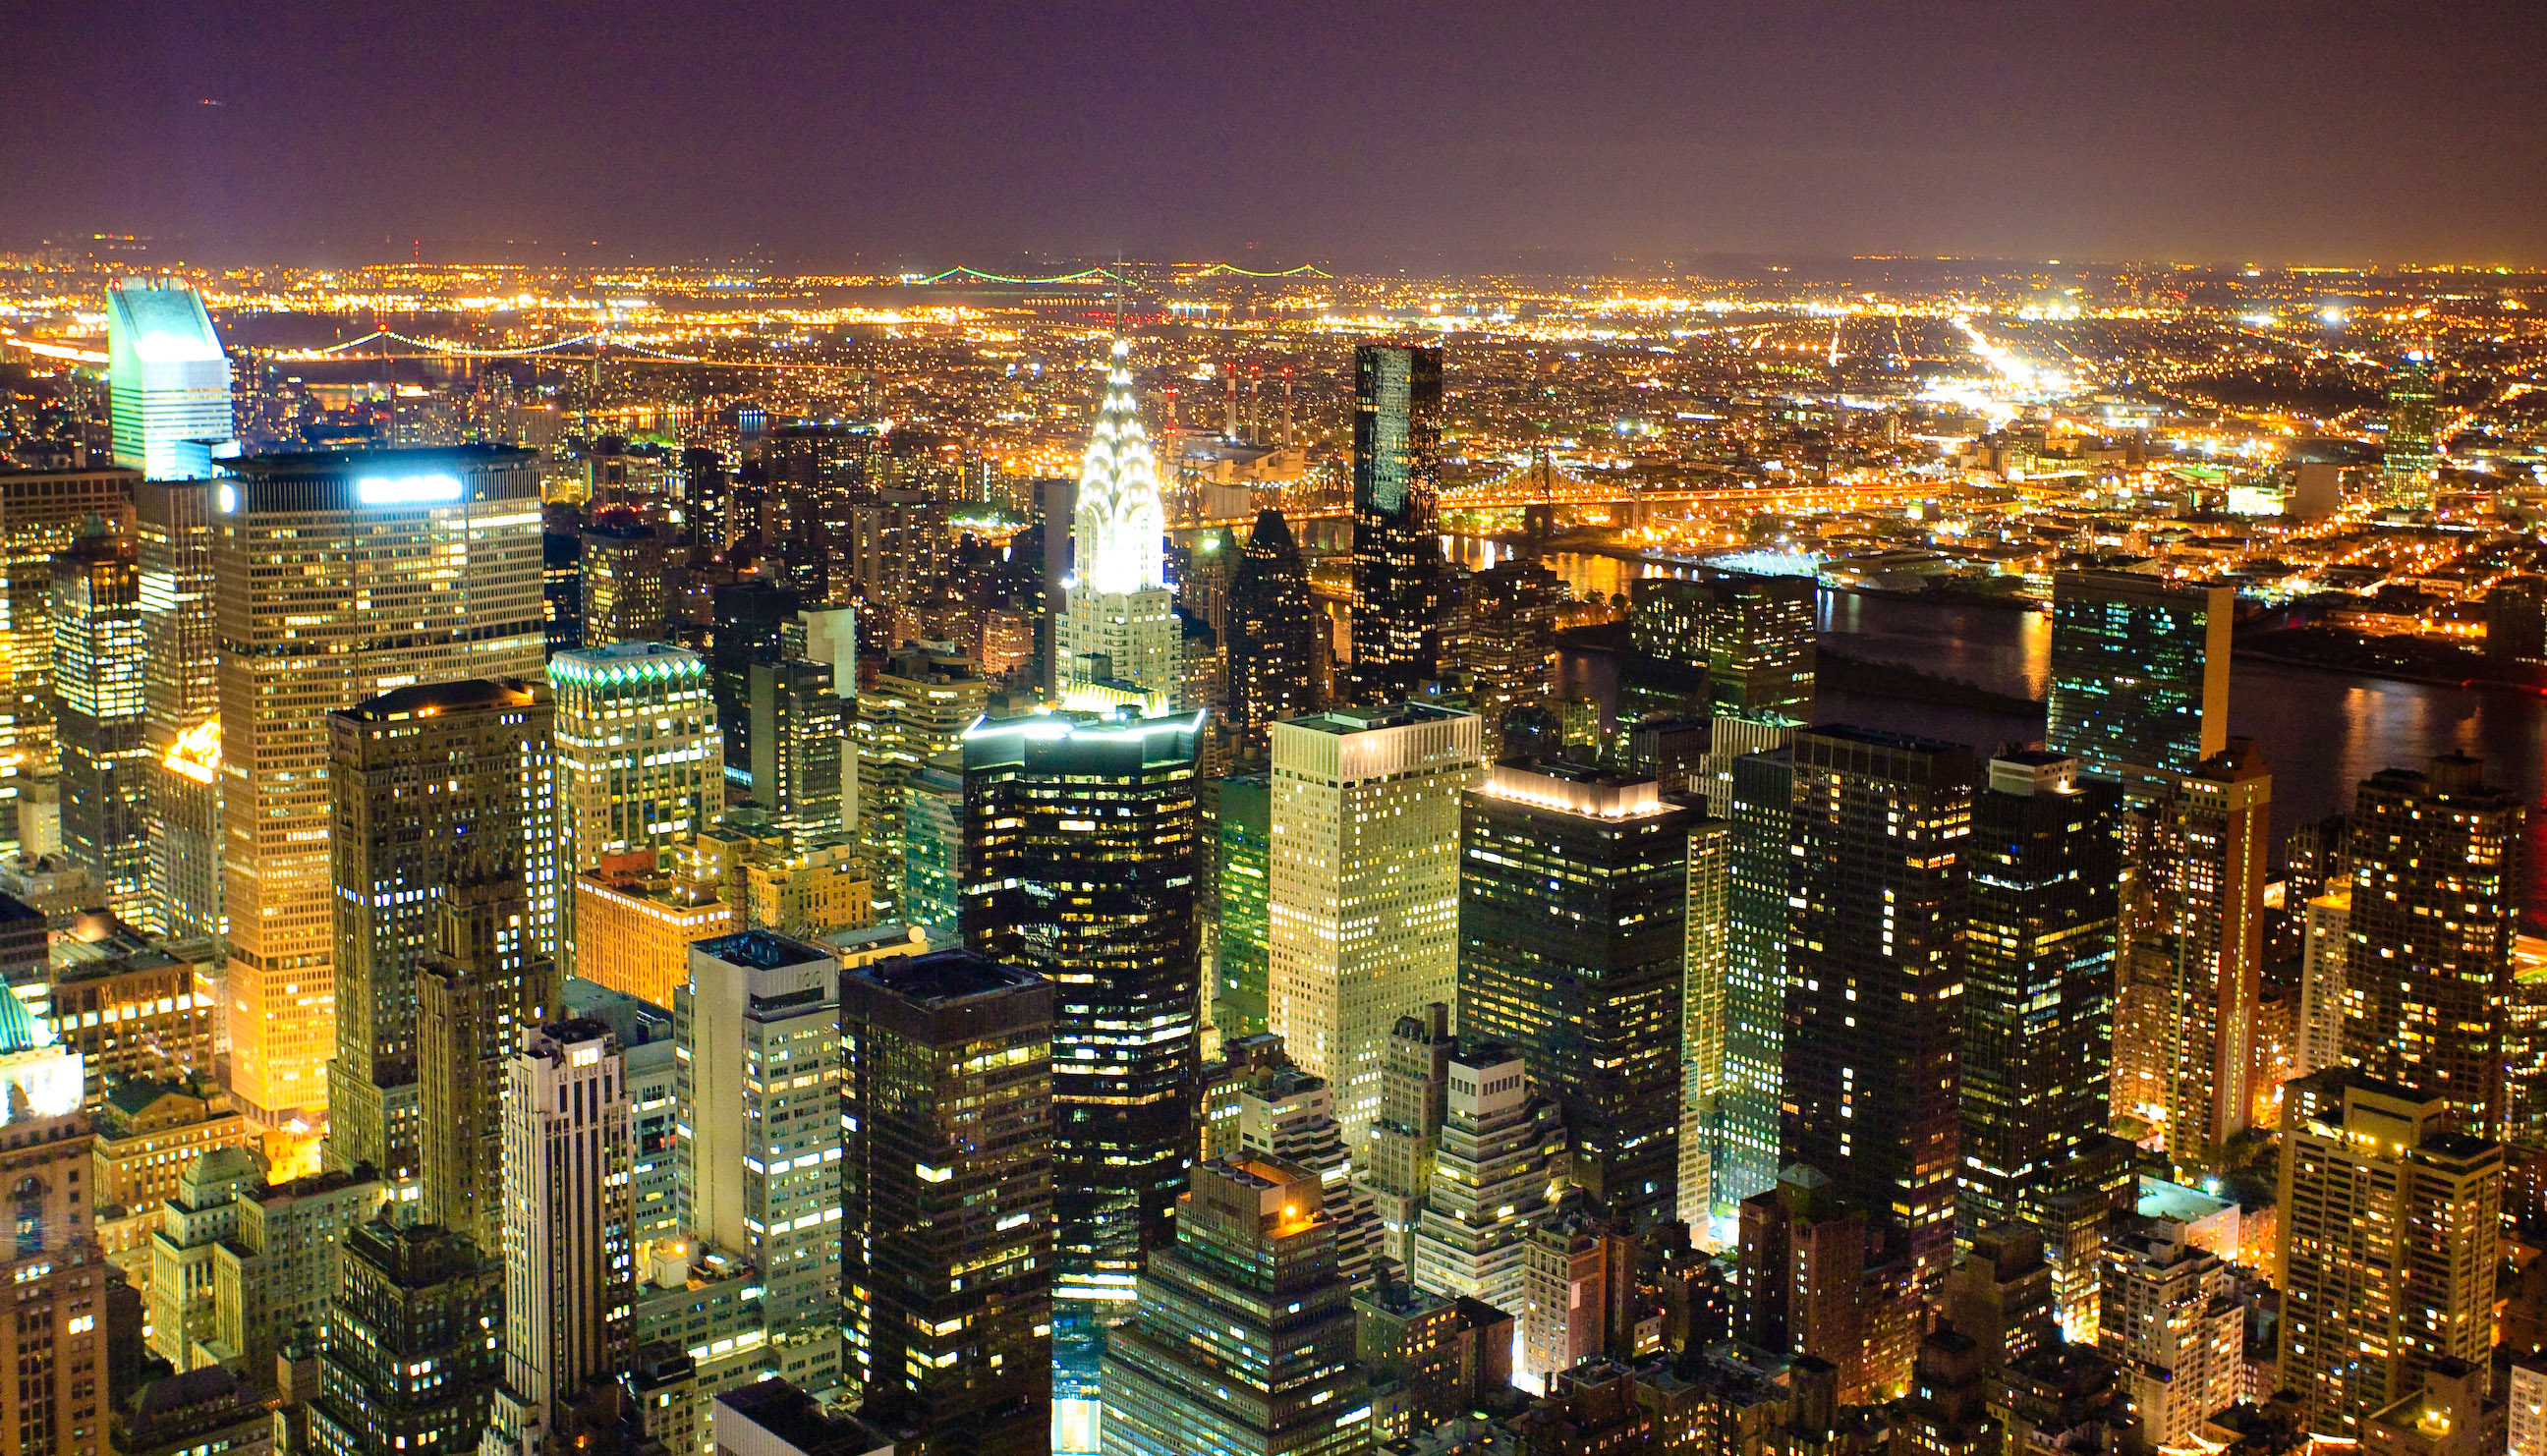 フリー画像 人工風景 建造物 建築物 街の風景 夜景 アメリカ風景 ニューヨーク フリー素材 画像素材なら 無料 フリー写真素材のフリーフォト